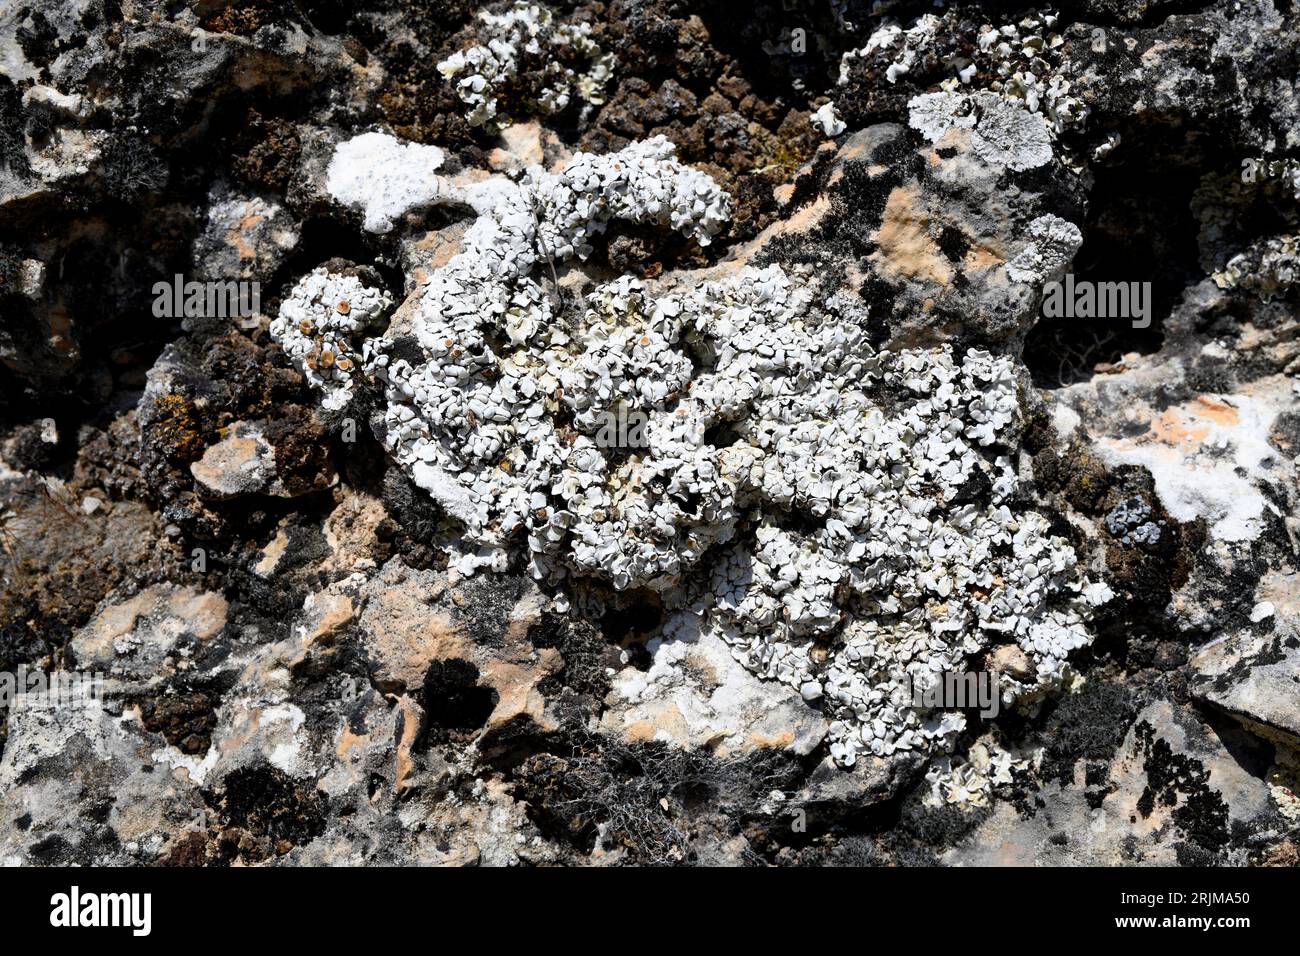 Squamarina lentigera ist eine squamuloseartige Flechte, die auf kalkhaltigen Felsen wächst. Dieses Foto wurde in Serranía de Cuenca, Castilla-La Mancha, Spanien, aufgenommen. Stockfoto